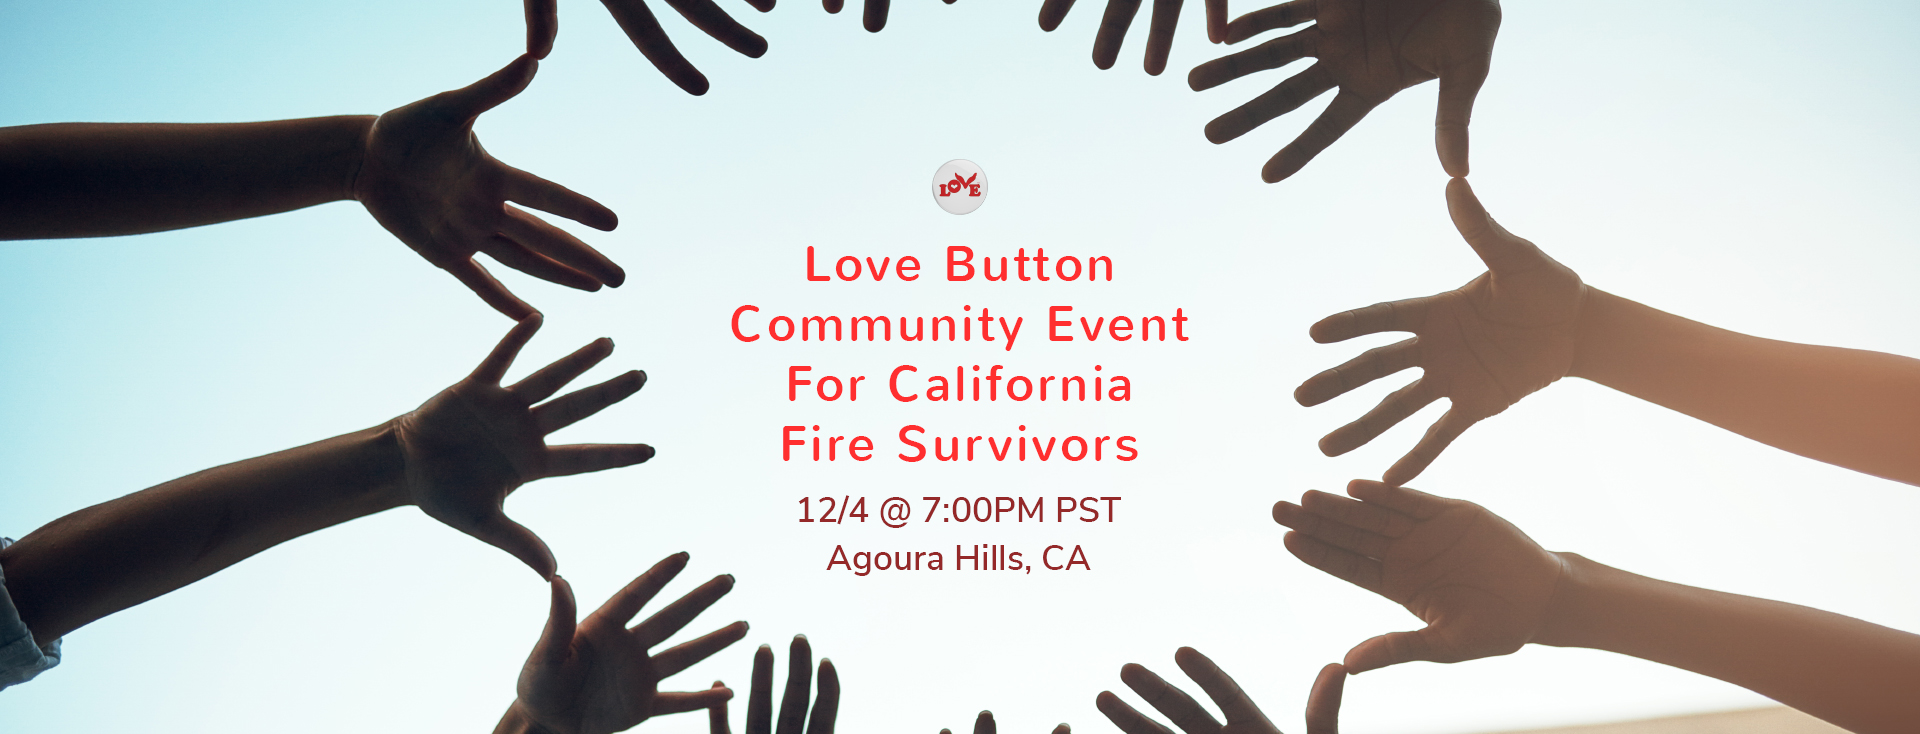 Love Button Community Event for Fire Survivors